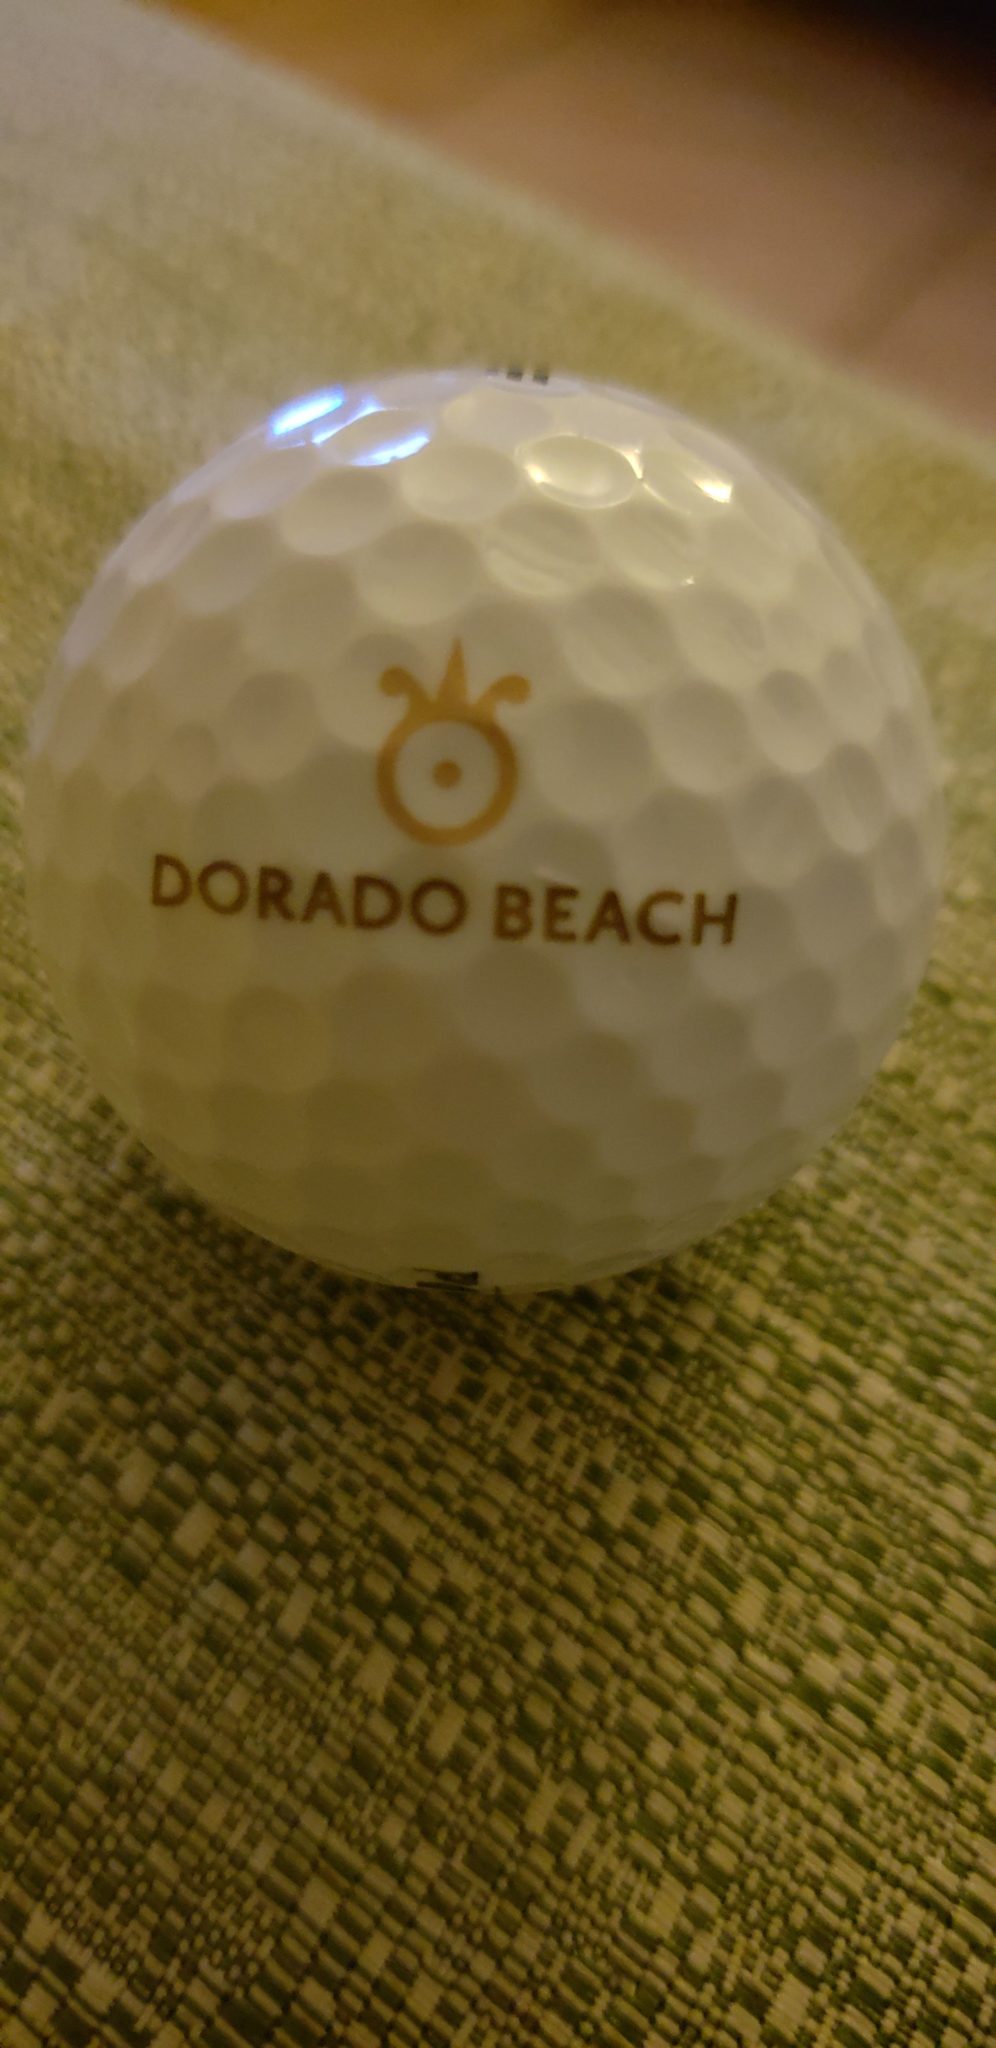 a golf ball on a table